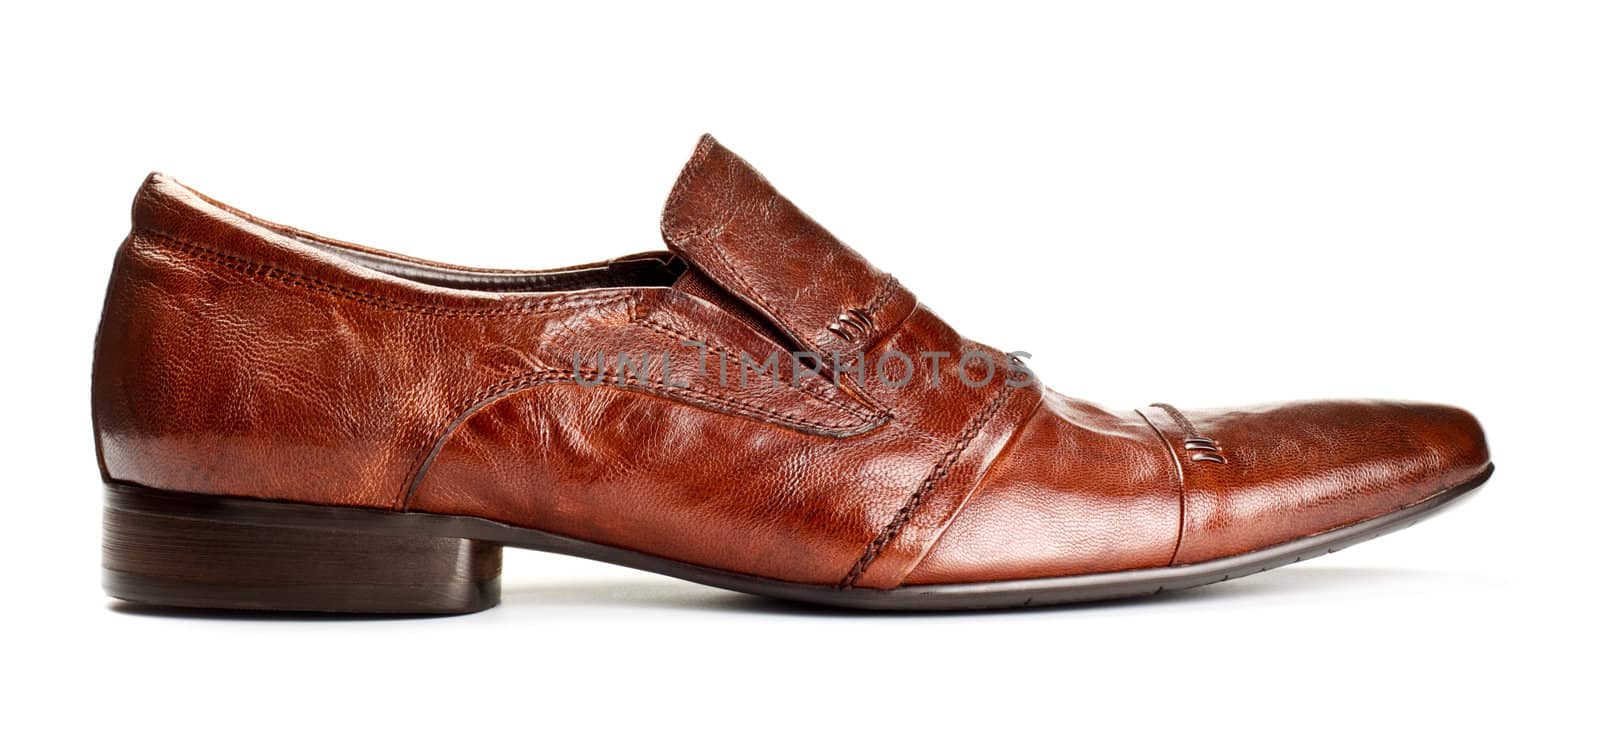 single brown shoe by petr_malyshev